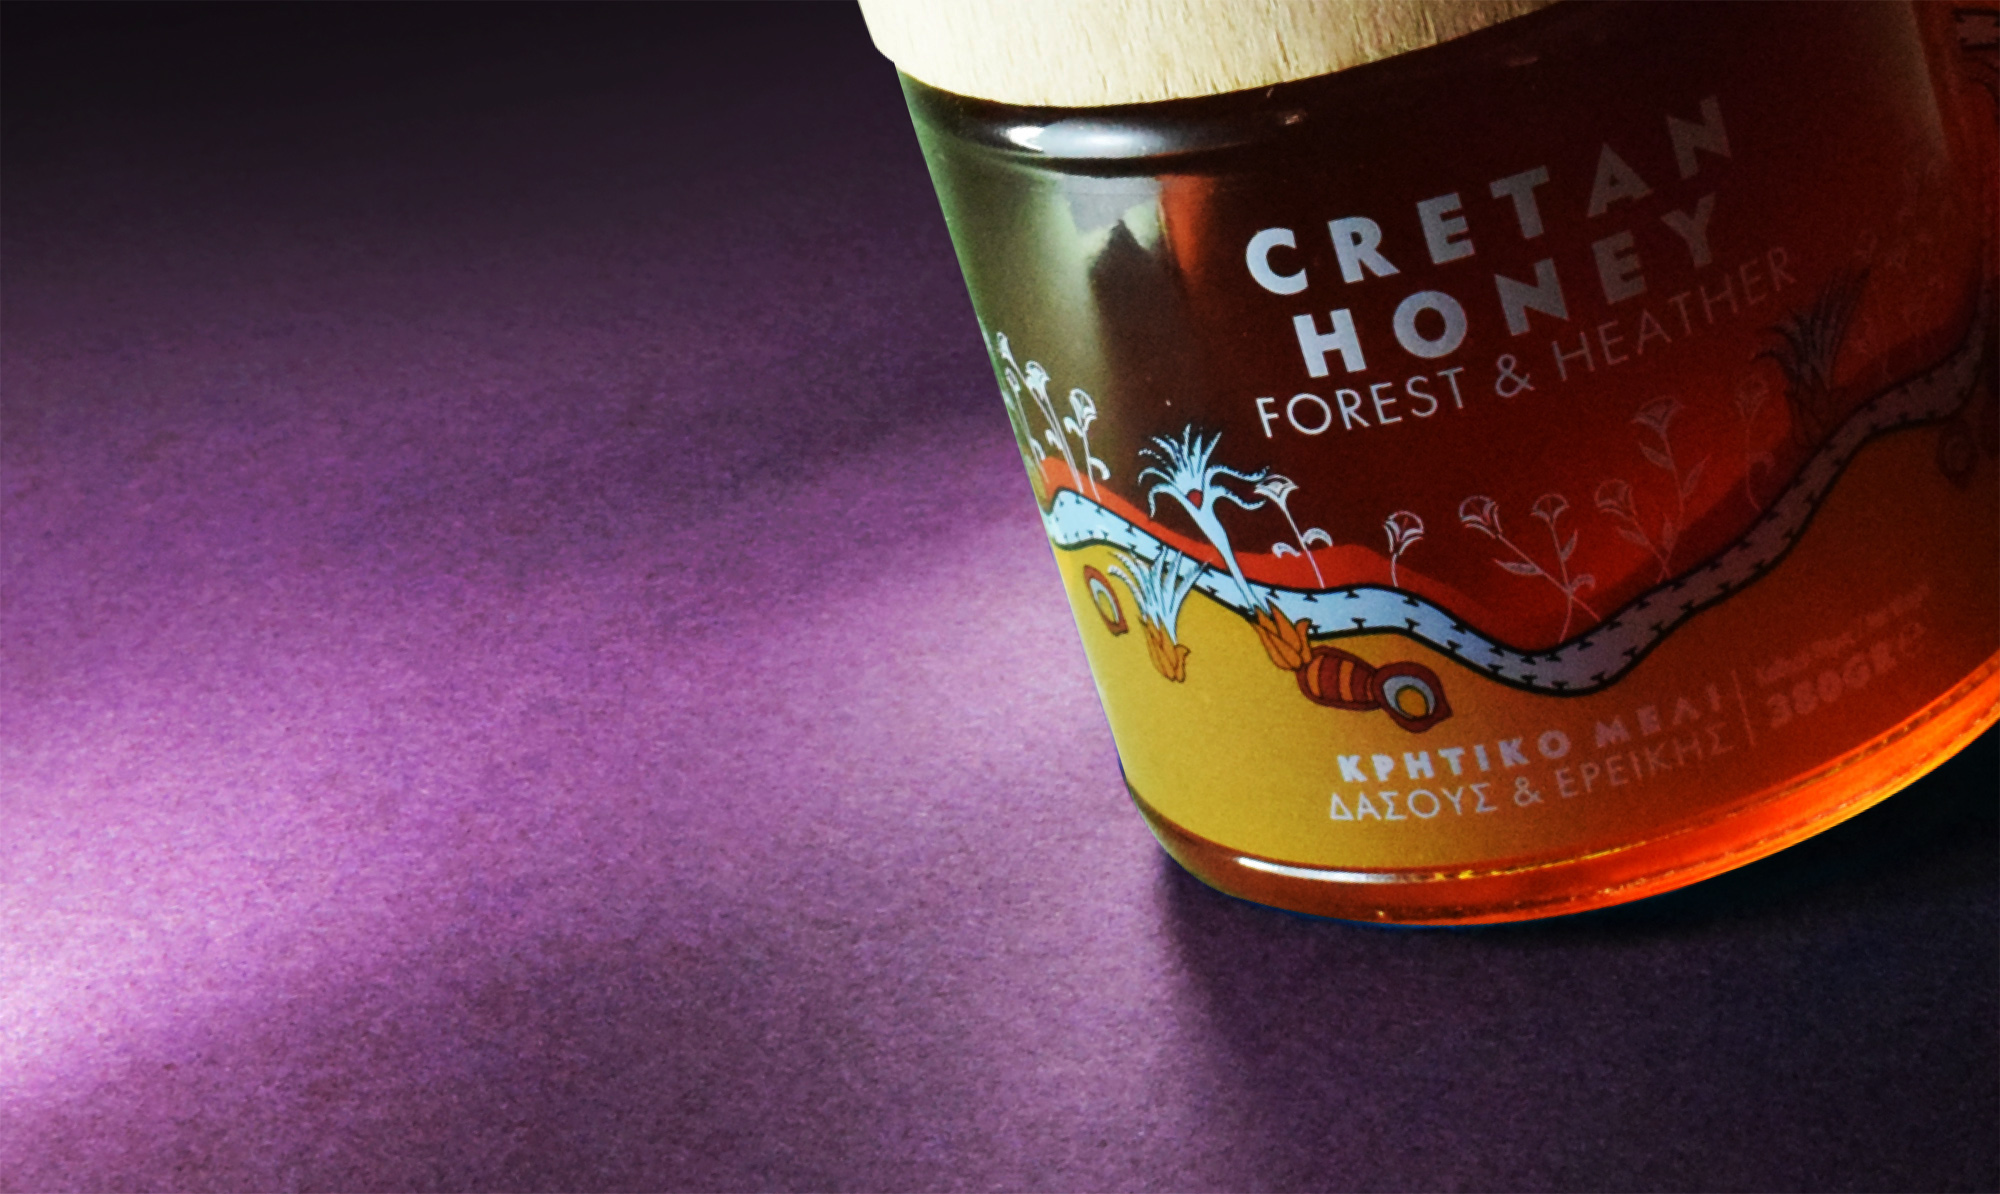 Leftgraphic – Cretan Honey